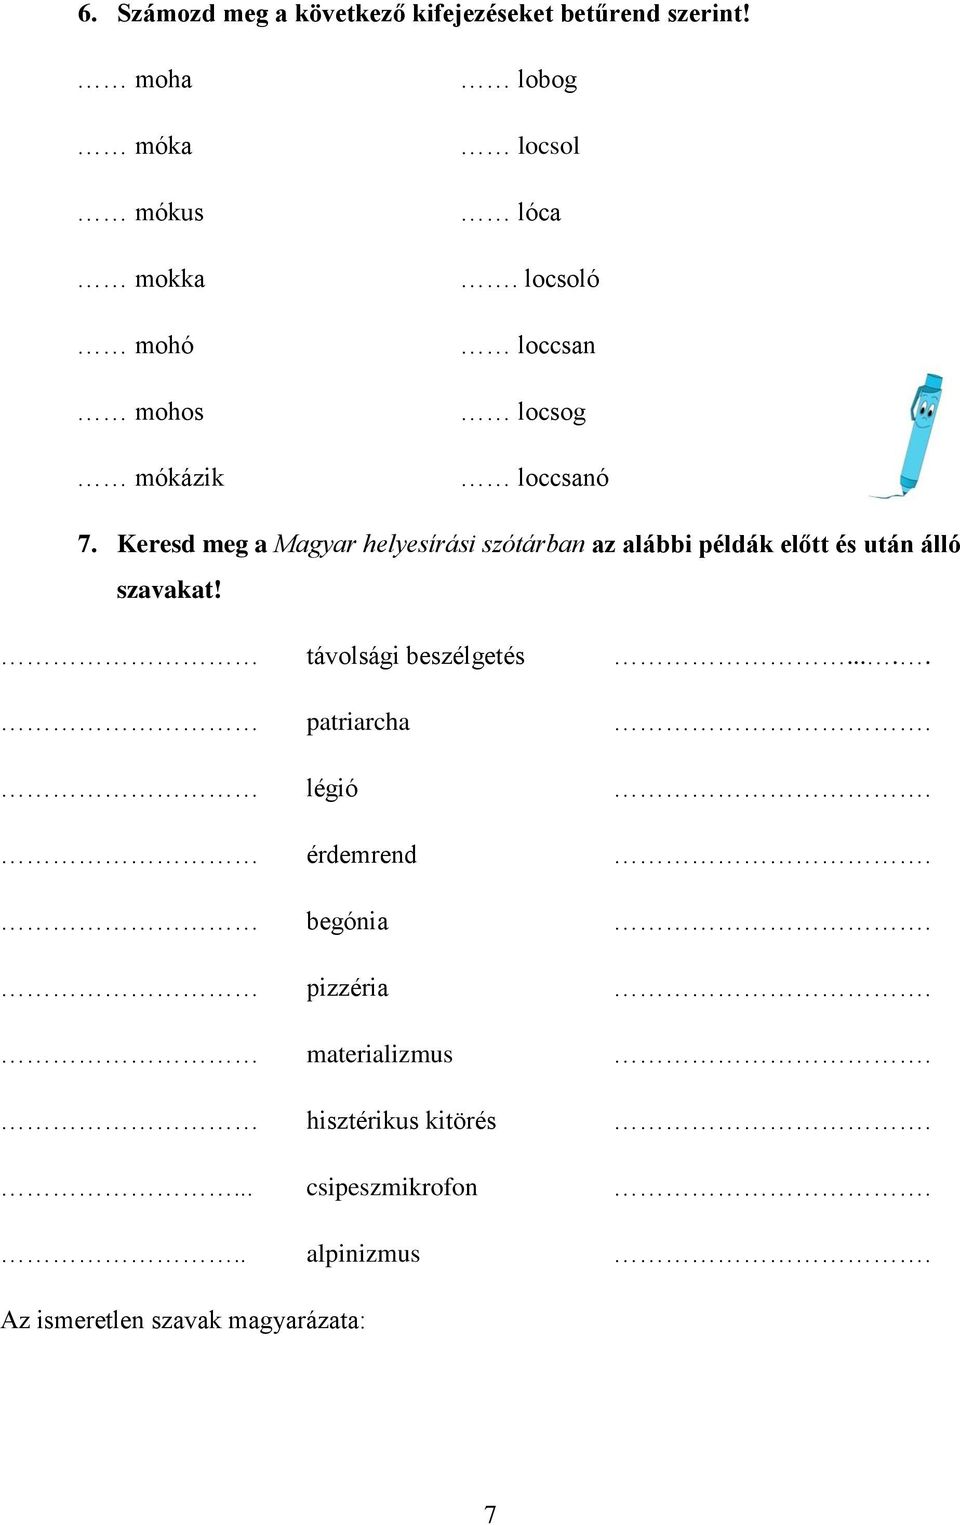 Keresd meg a Magyar helyesírási szótárban az alábbi példák előtt és után álló szavakat!